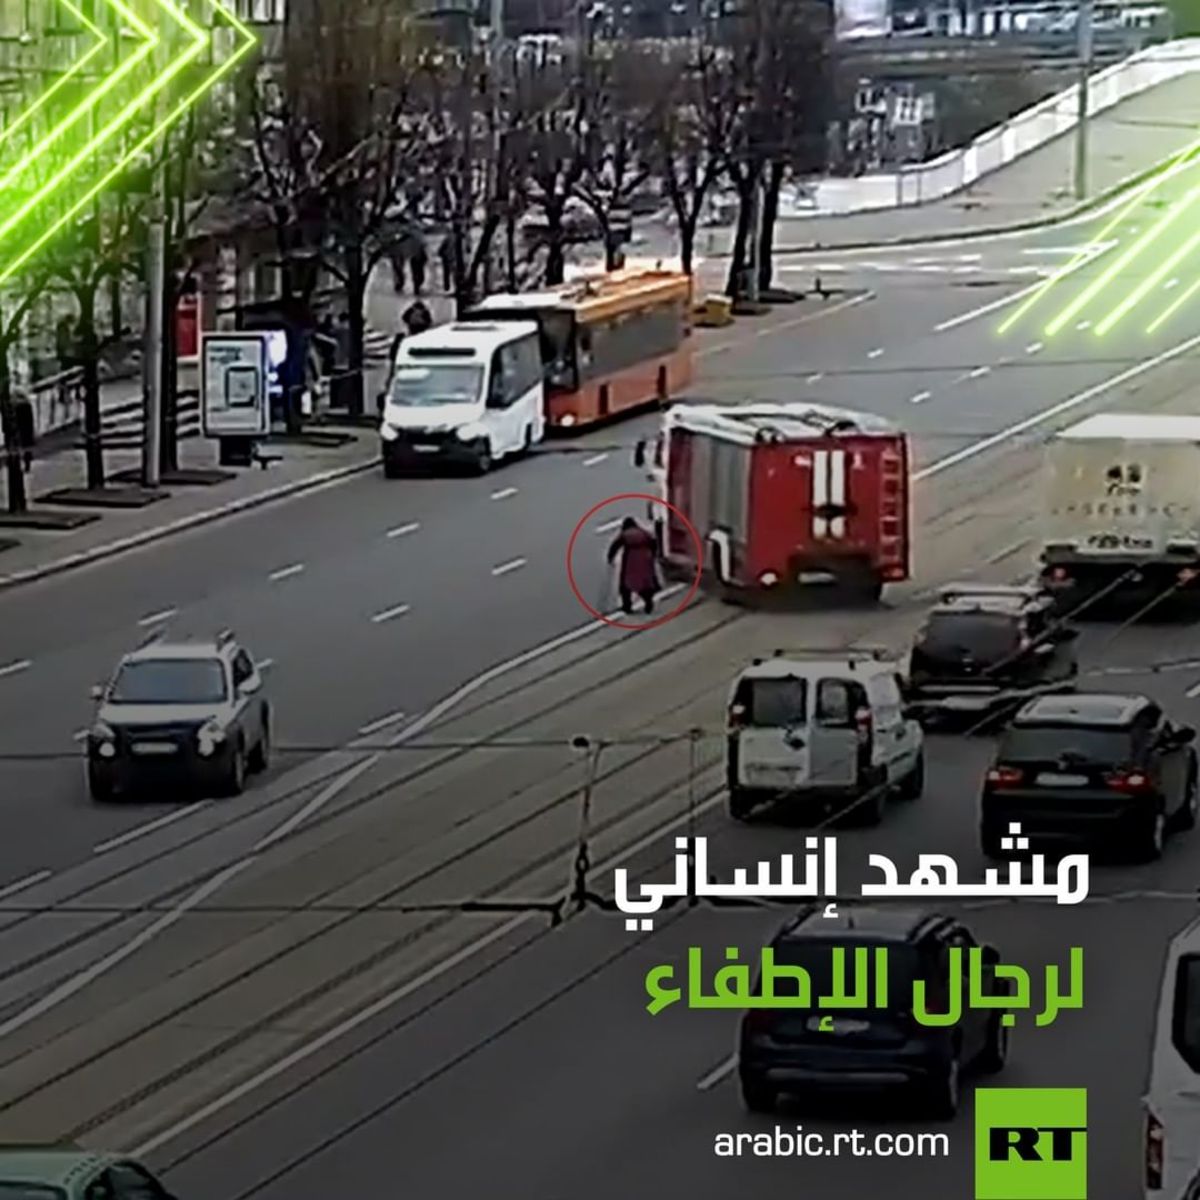 روسیه/ دخالت آتش نشانی برای کمک به عبور پیرزن از خیابان (فیلم)